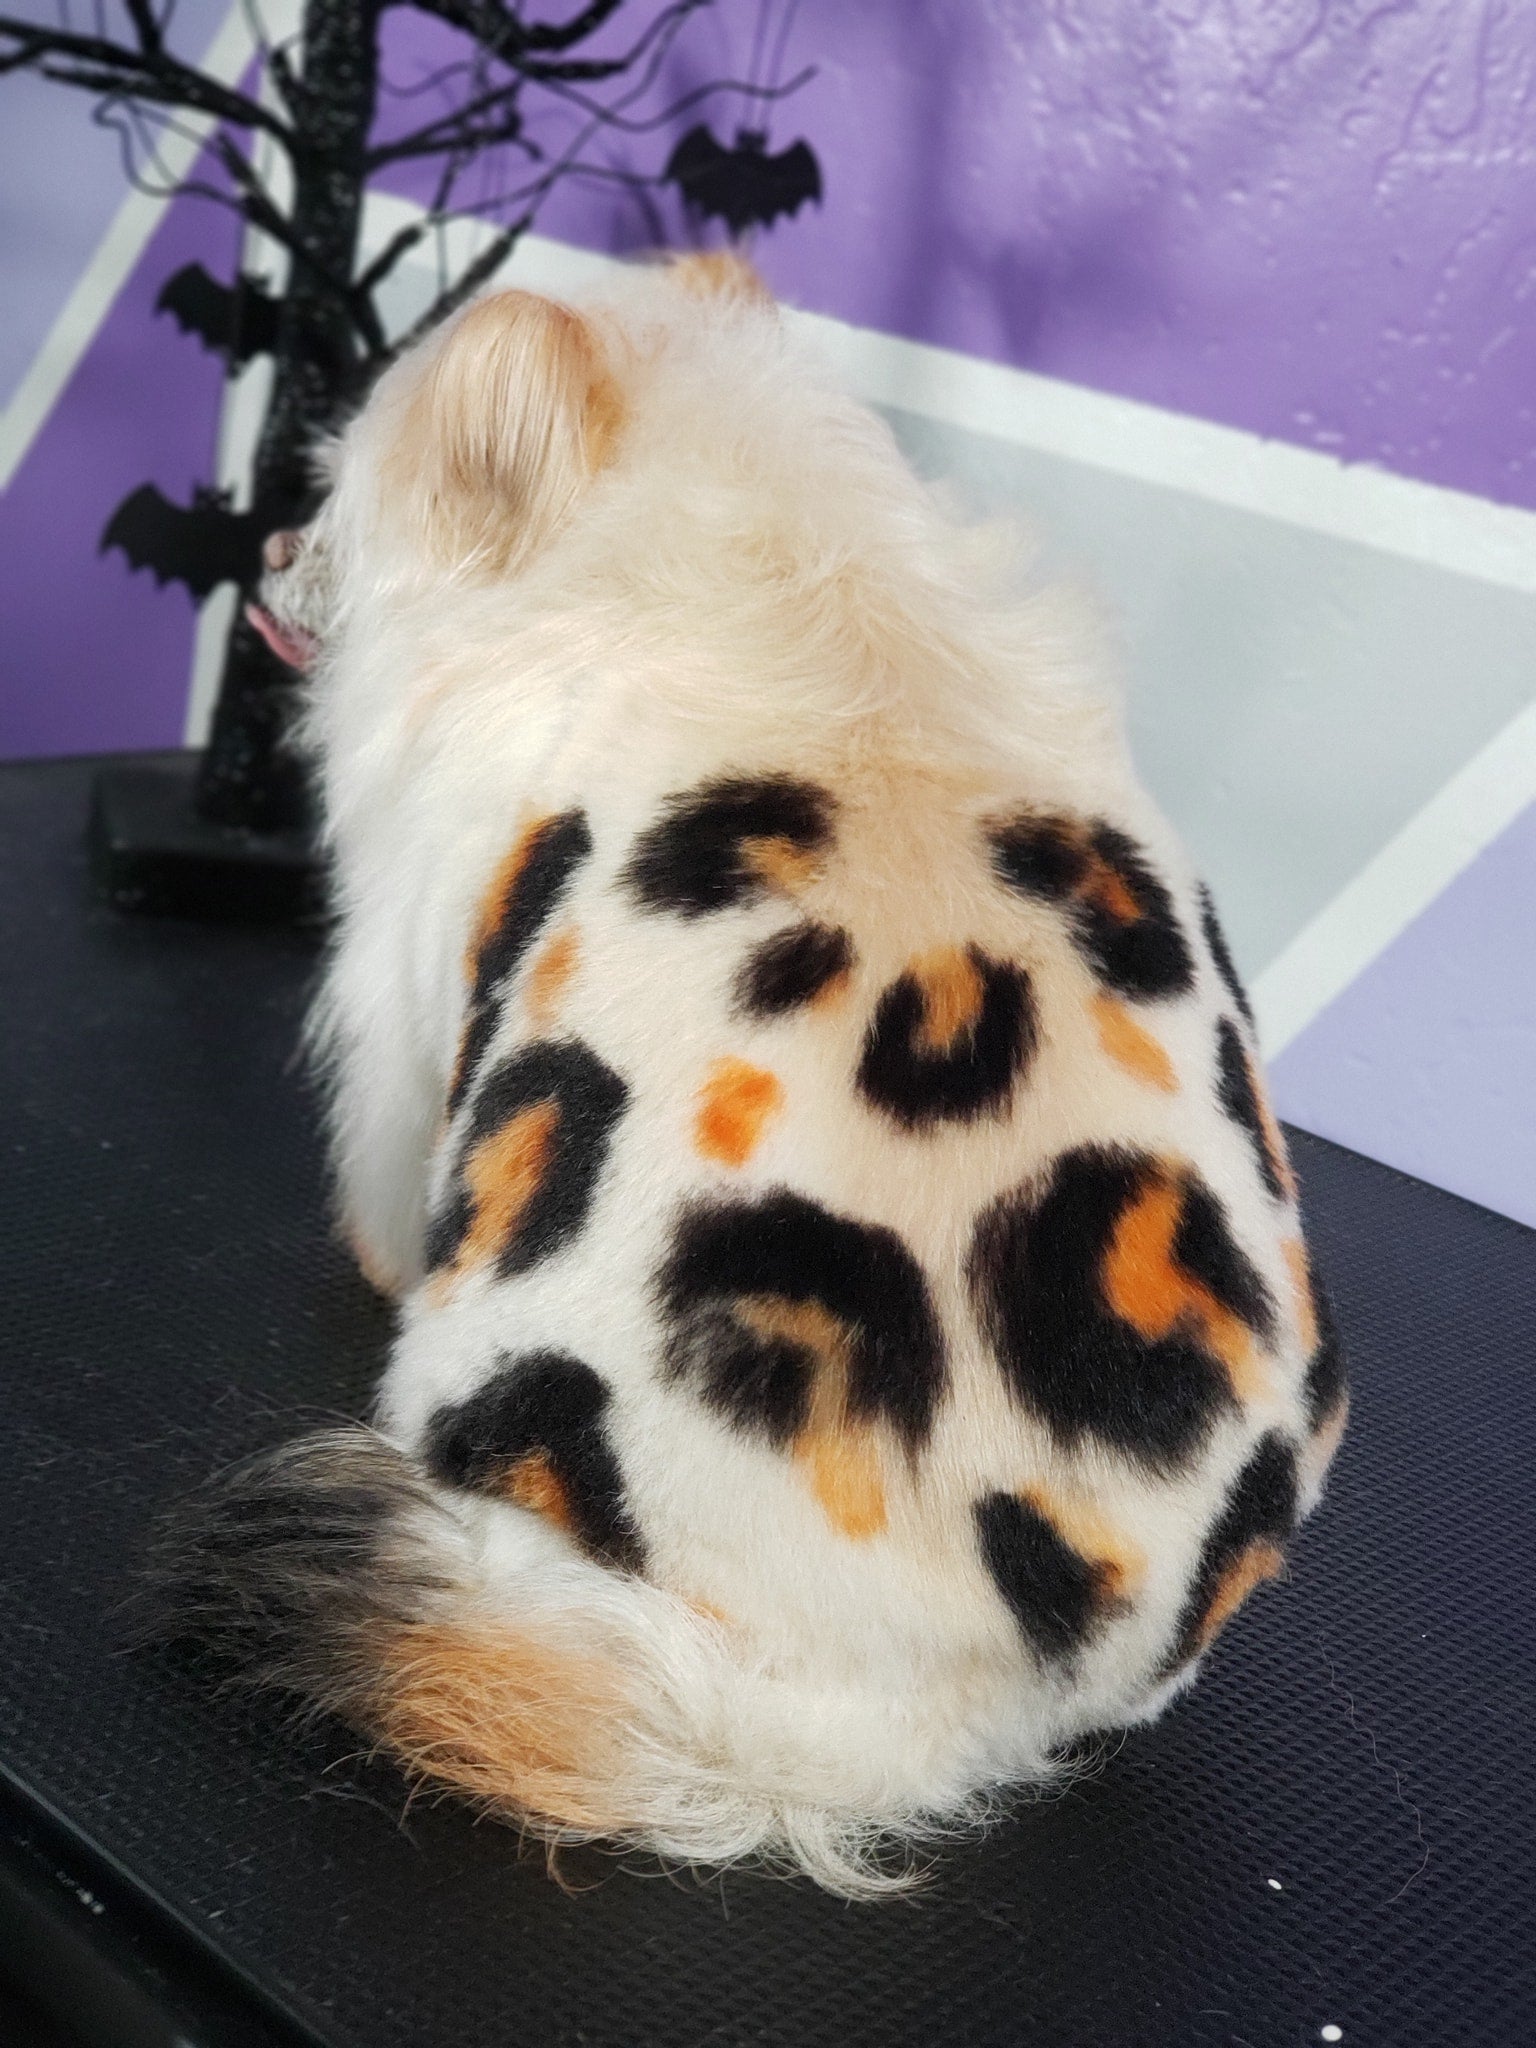 Tinte seguro para mascotas para un concurso creativo de peluquería canina